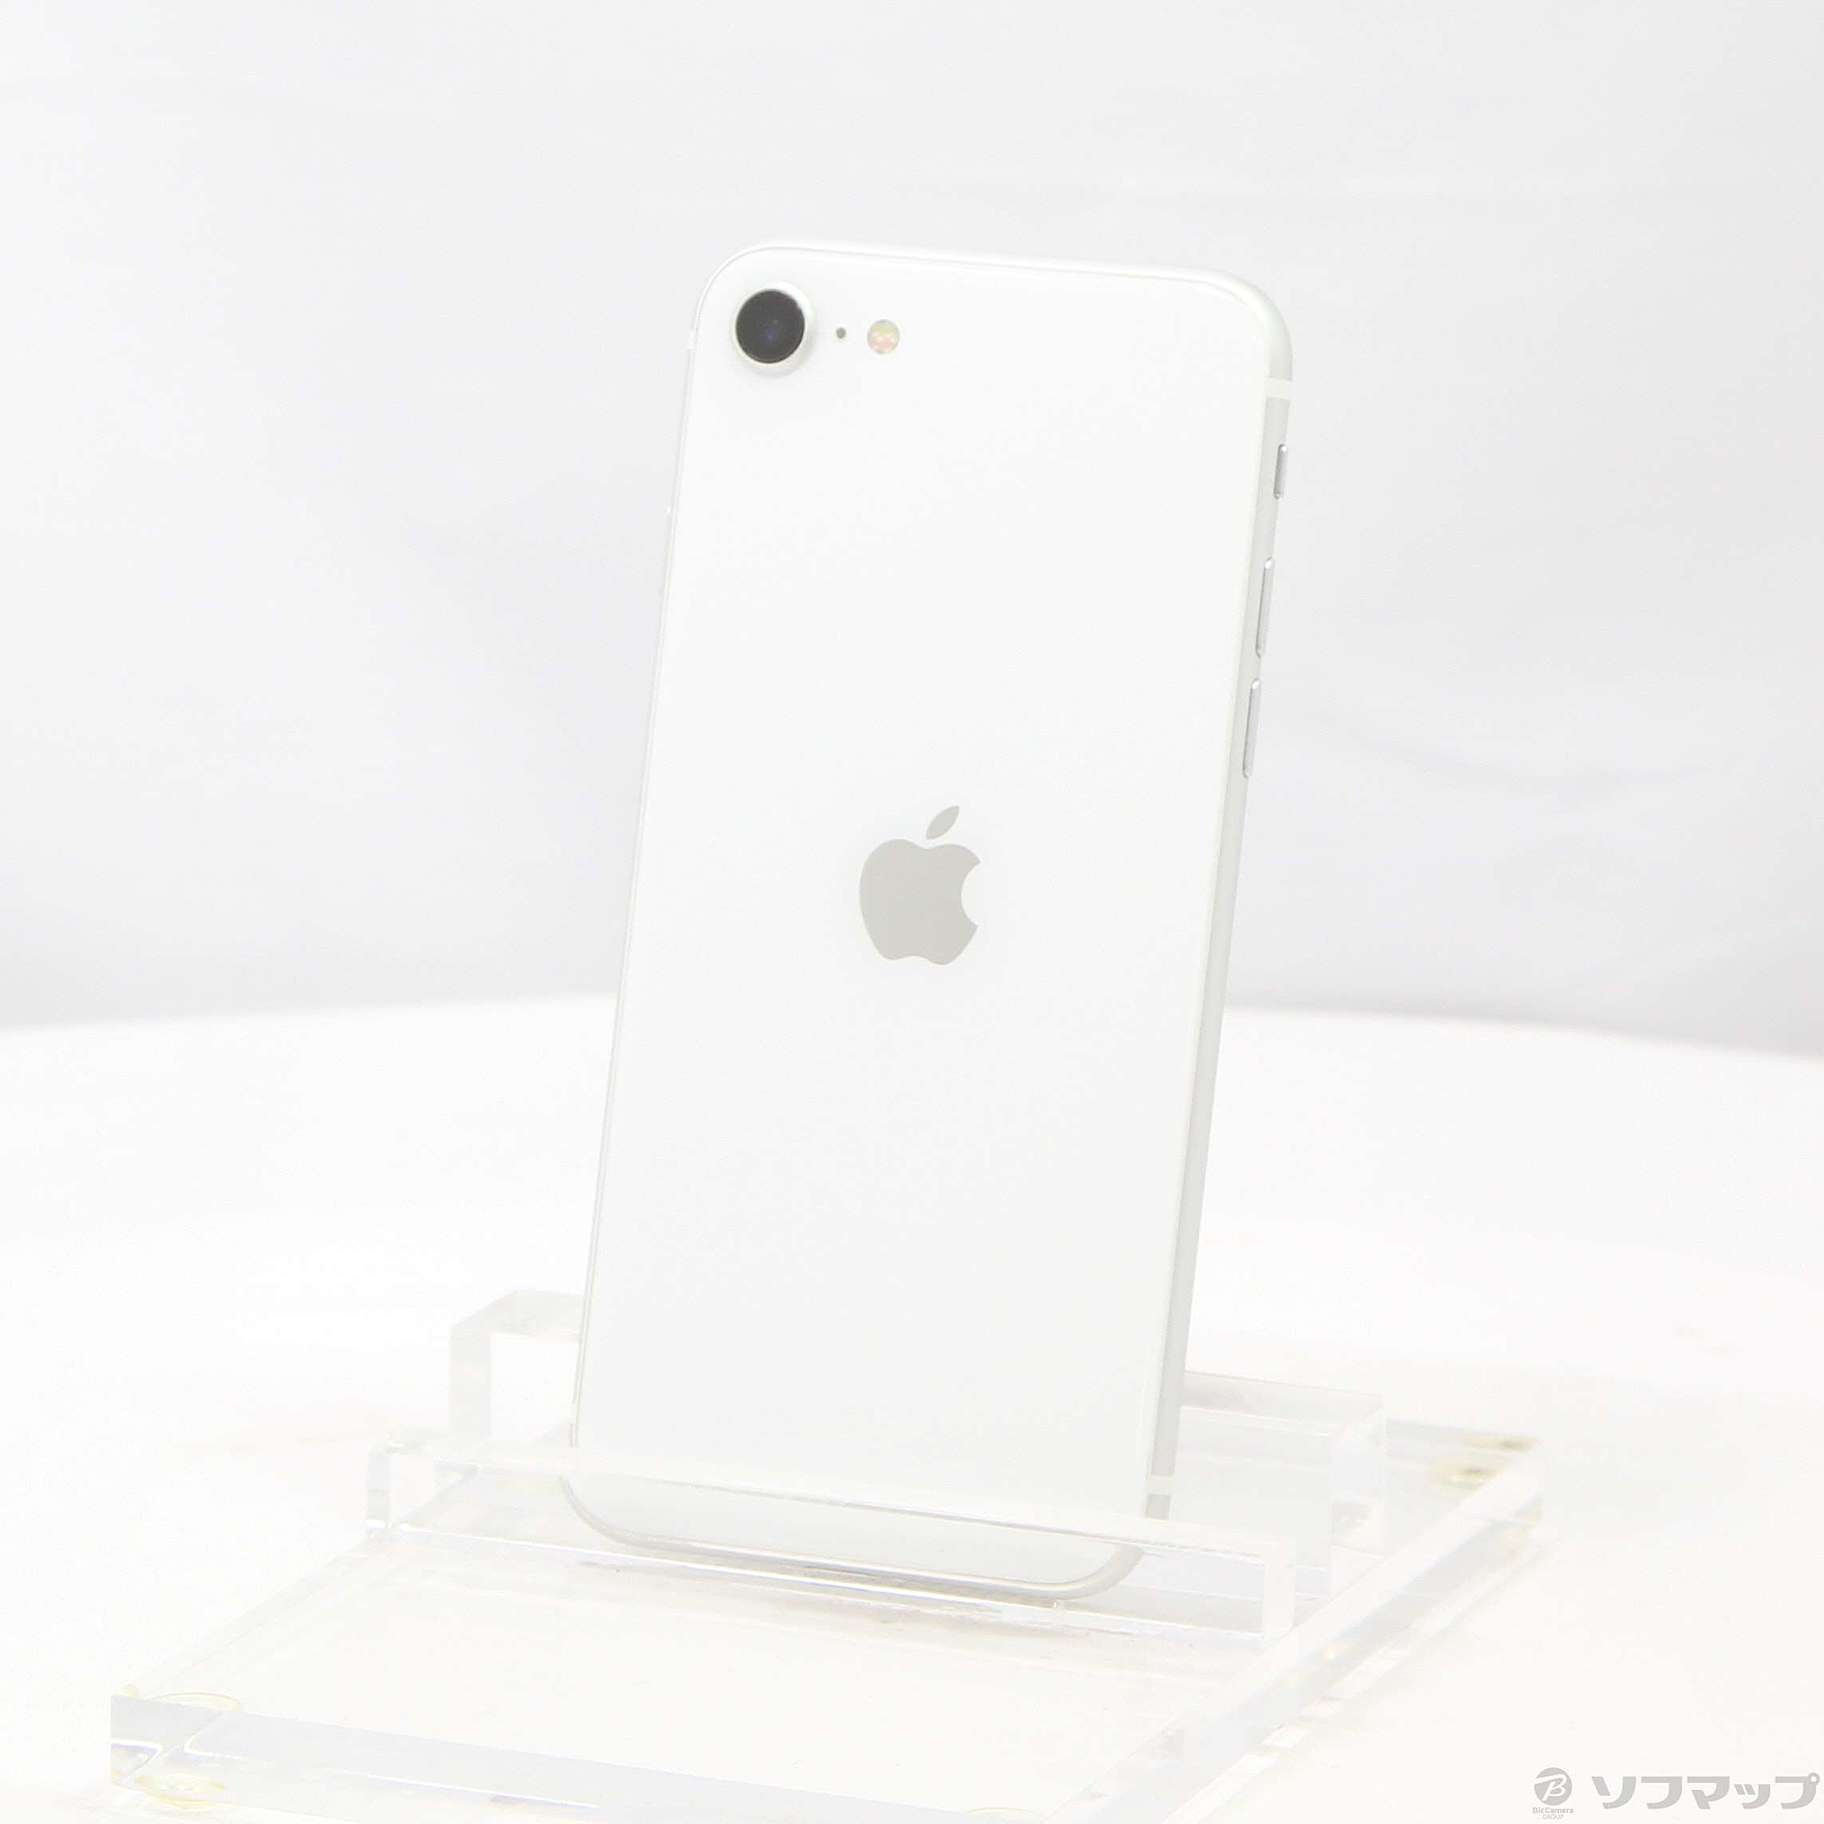 iPhone SE 第2世代 (SE2) ホワイト128 GB SIMフリー